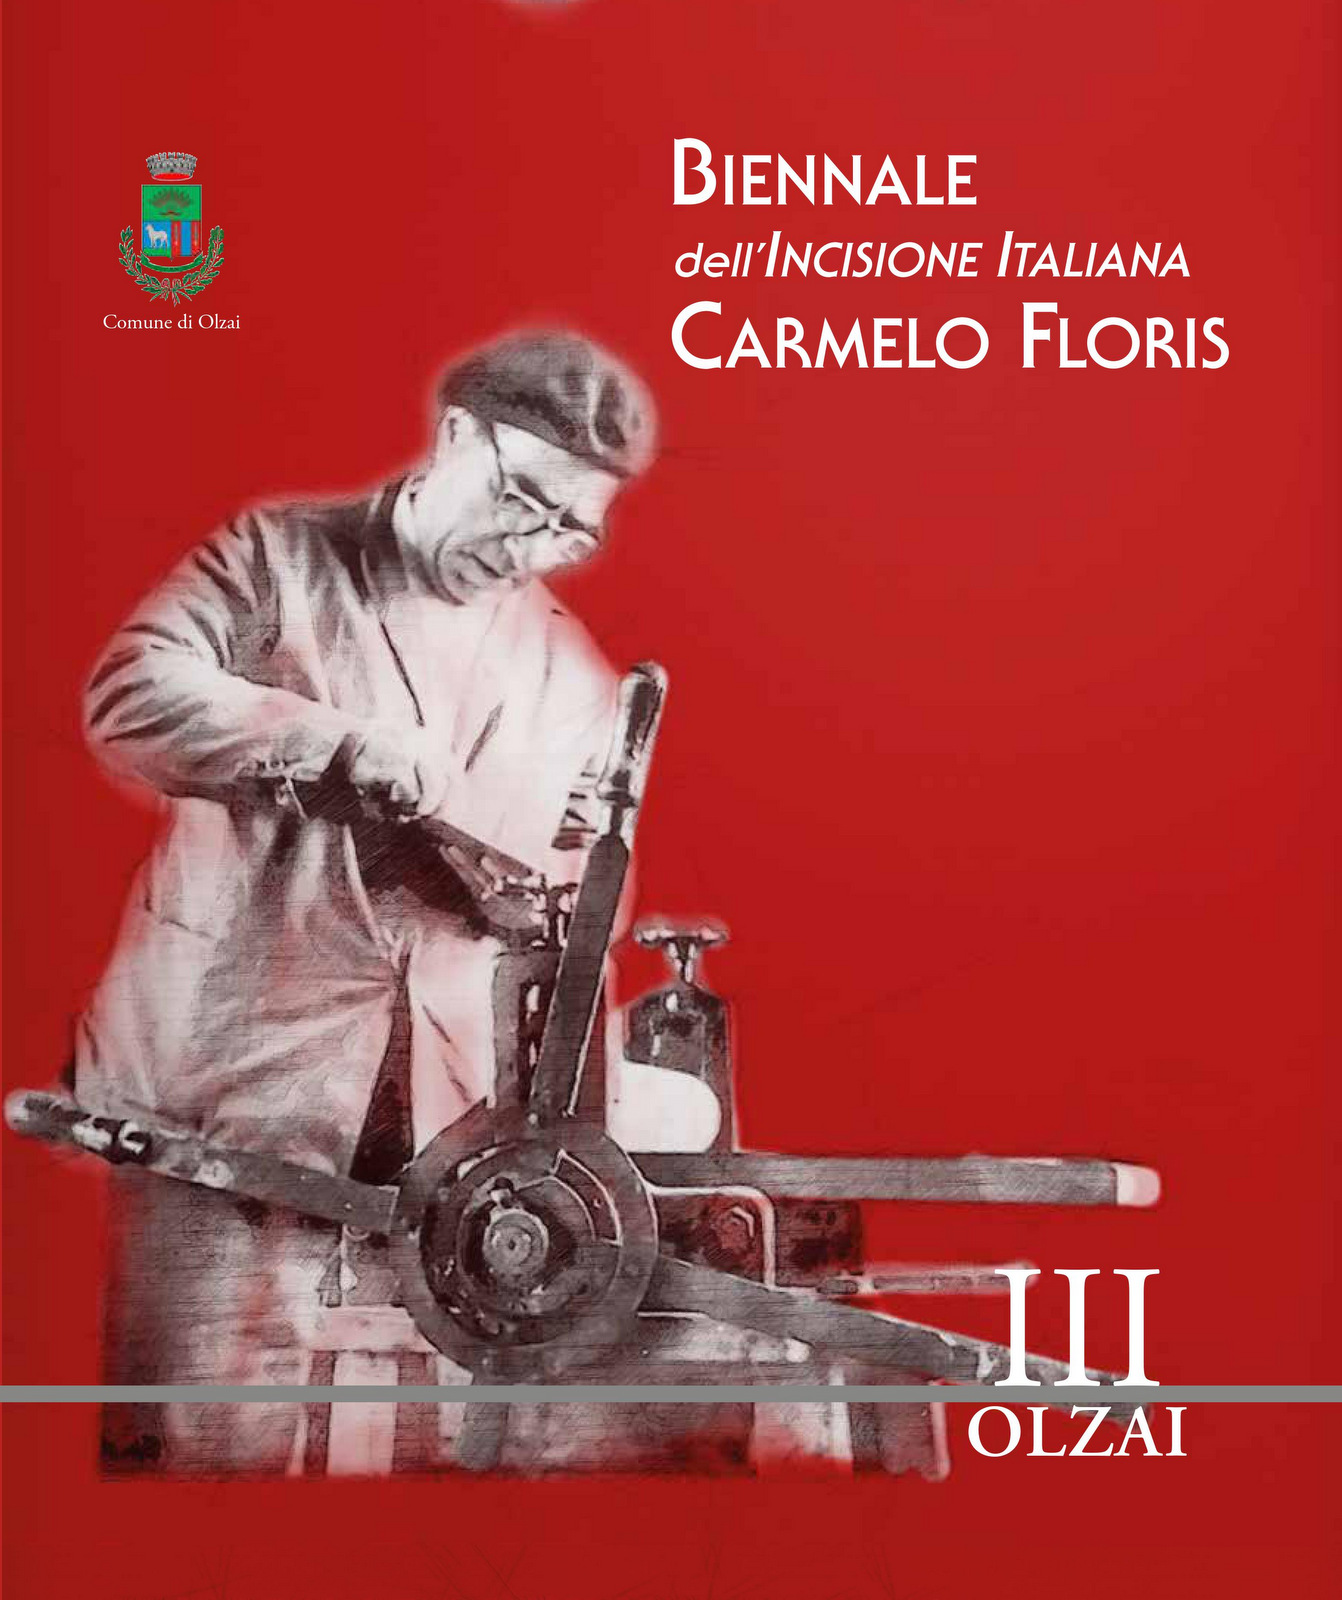 Sabato 4 settembre la presentazione del catalogo della III Biennale dell'Incisione Italiana